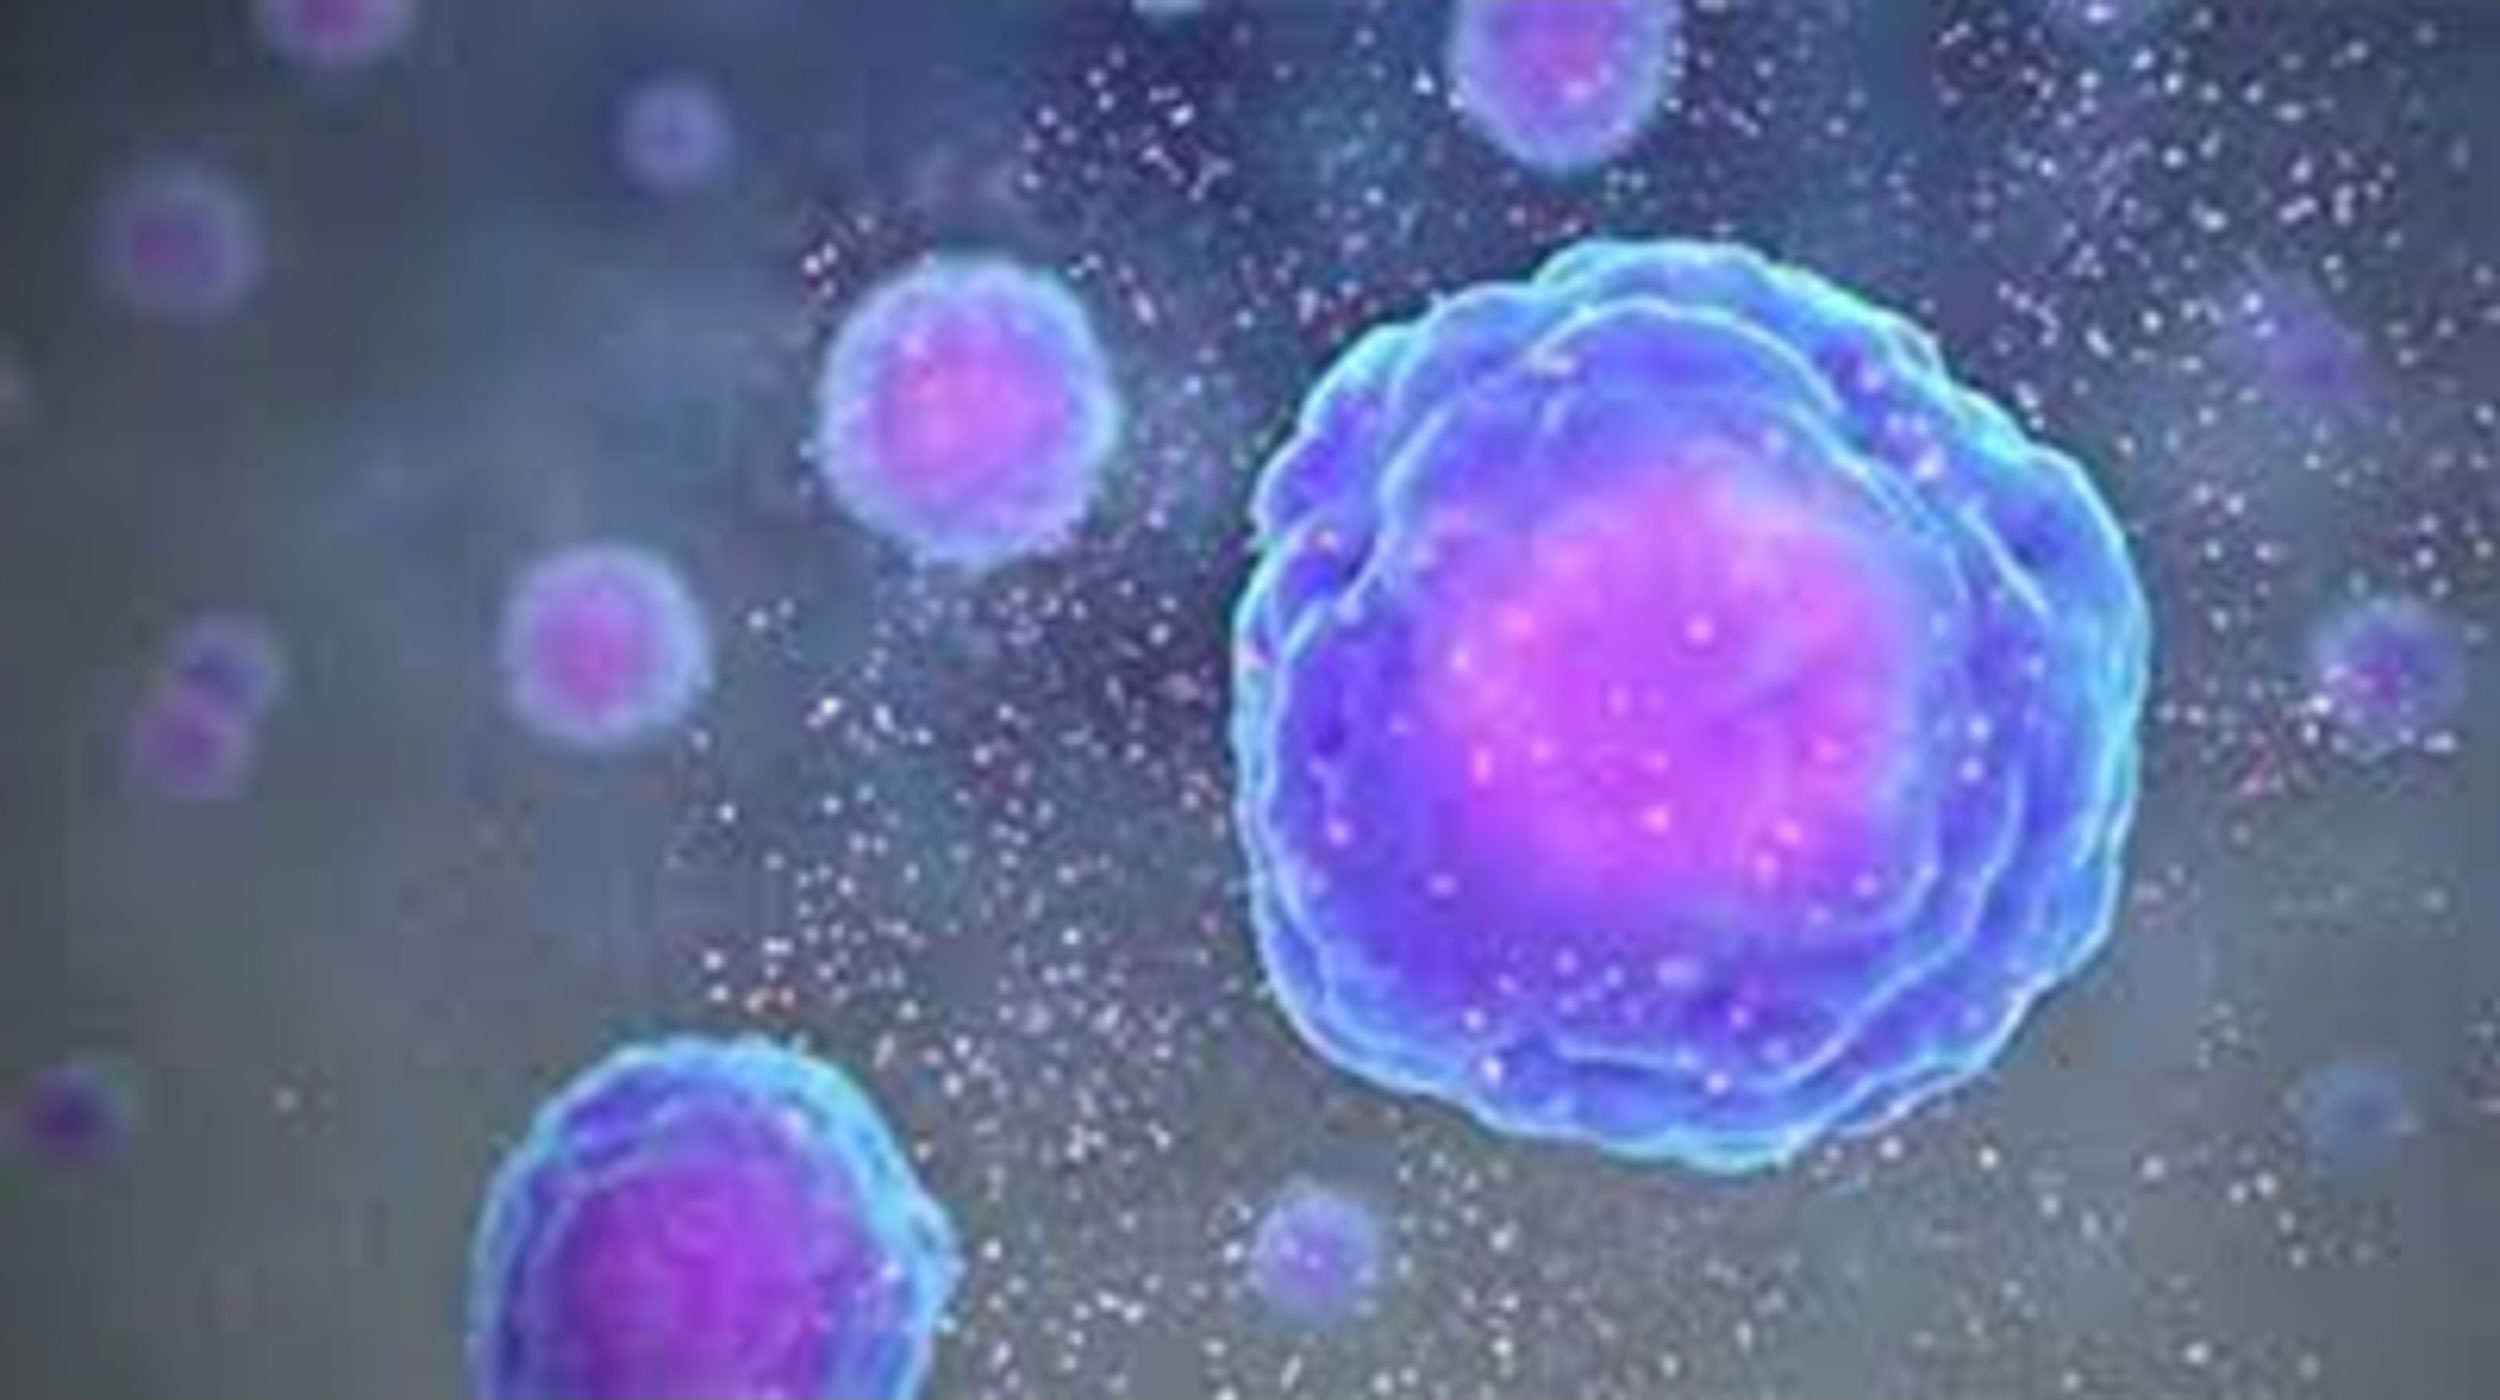 Células inmunes modificadas genéticamente para evitar la metástasis